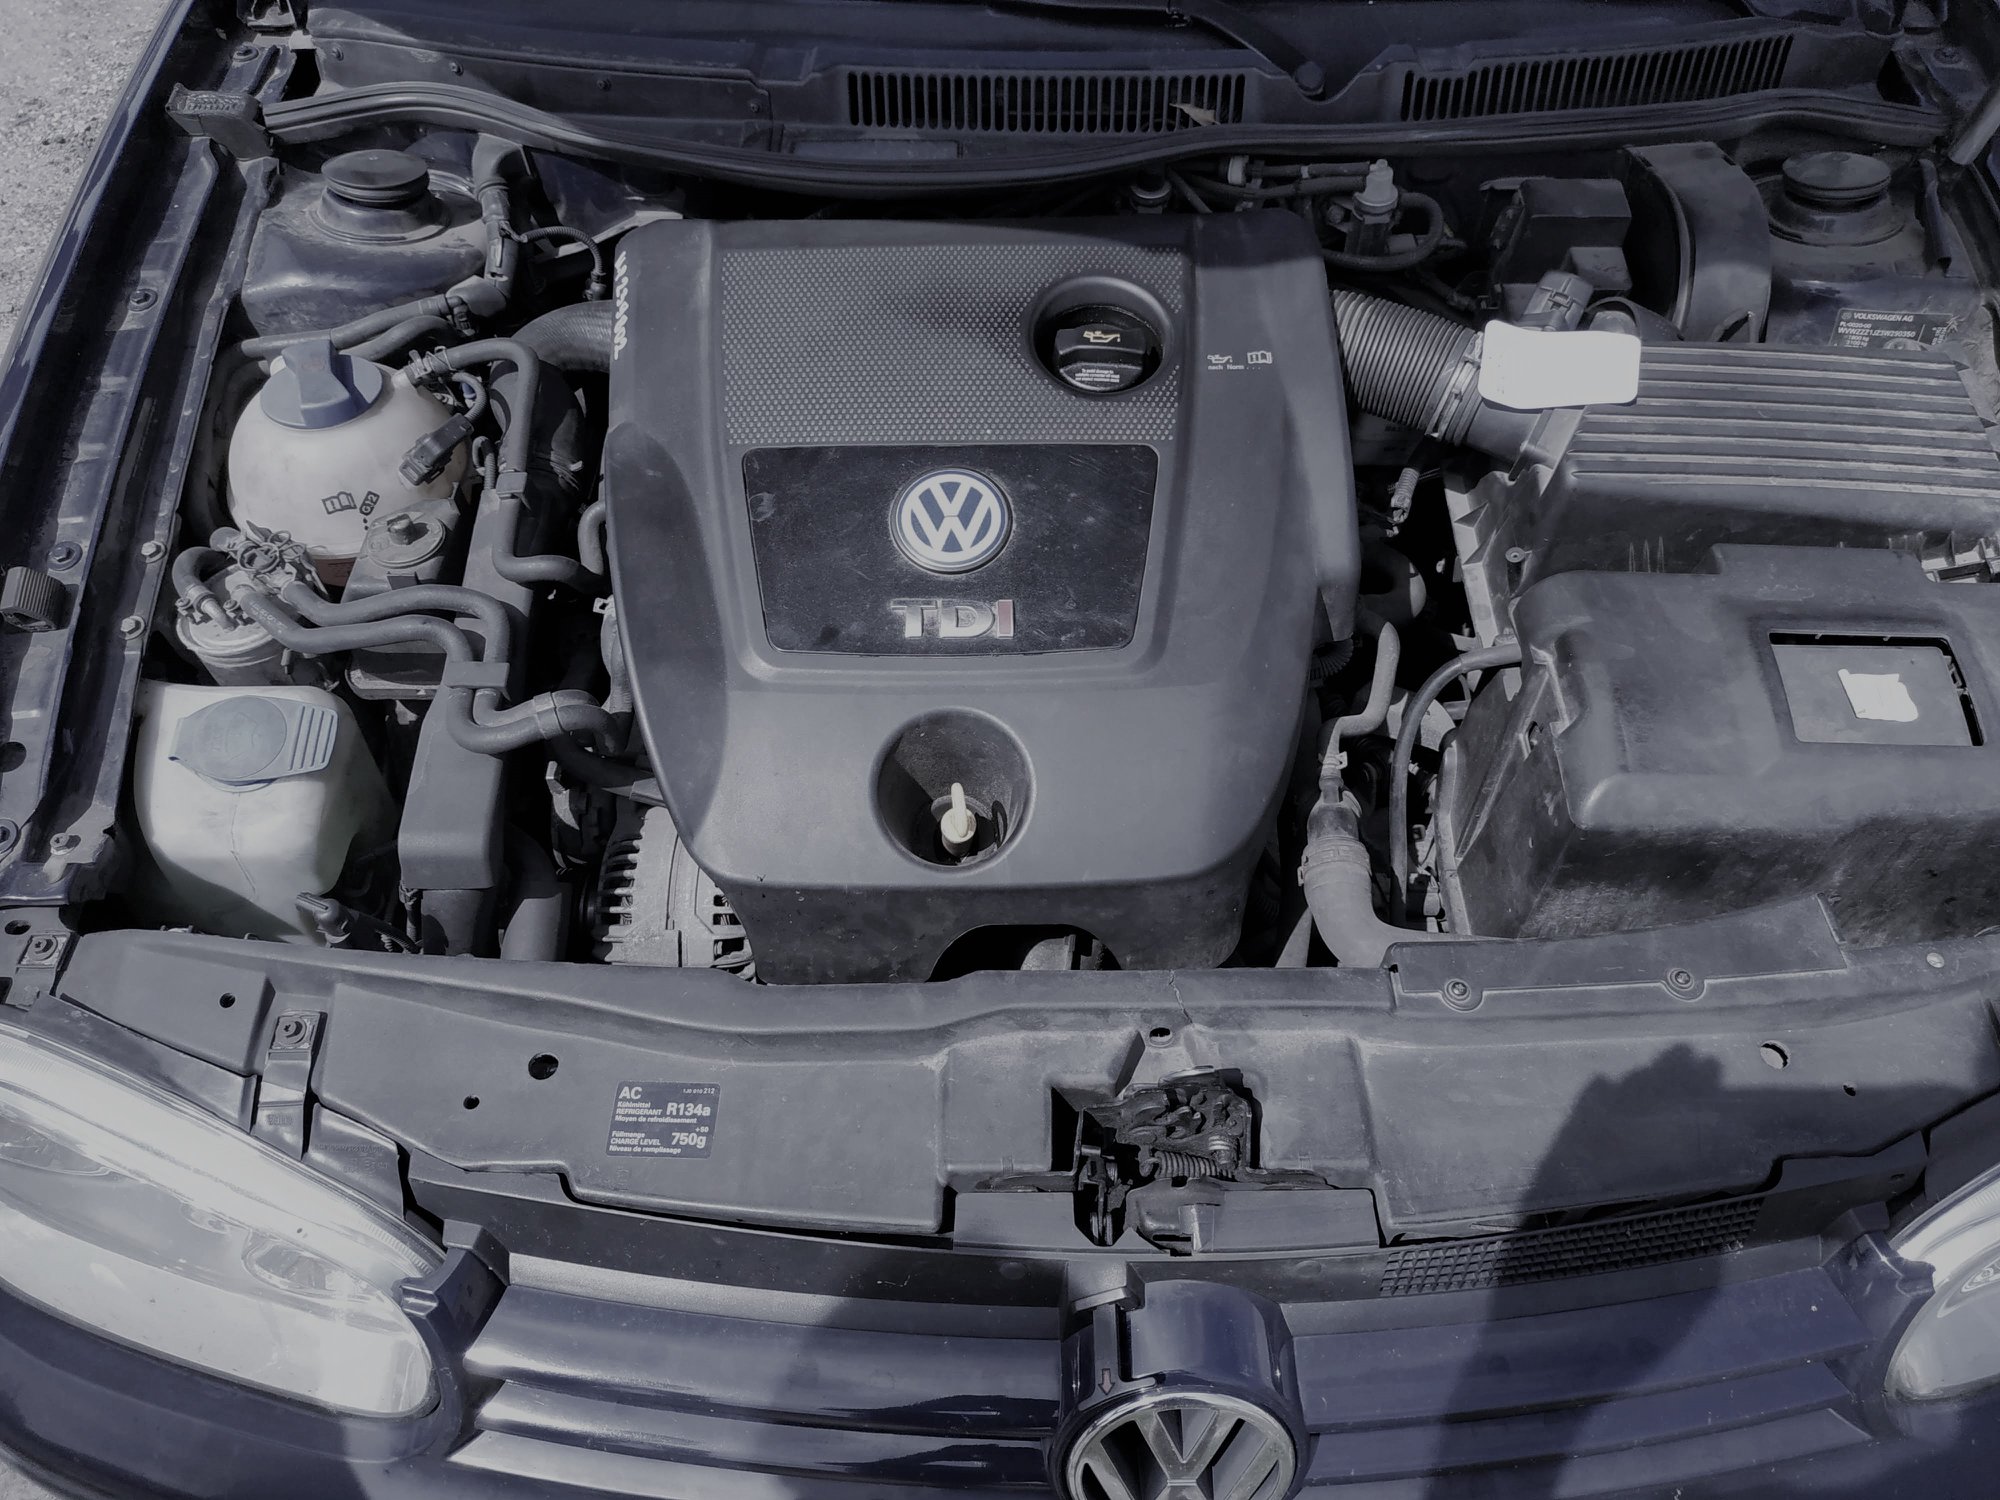 VW Golf 4 1.9 TDI 101 KM AXR >> 144 KM 327 Nm Boost Factory